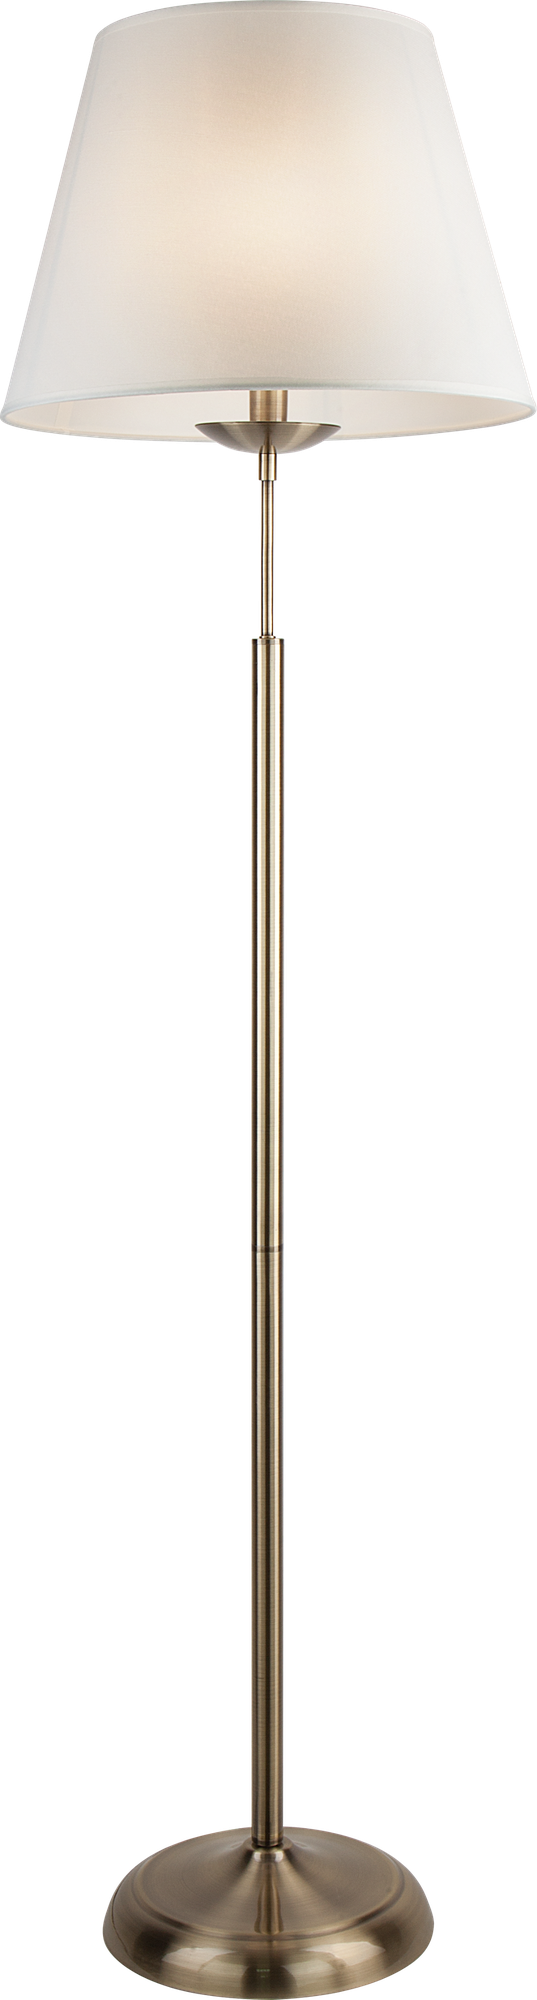 Торшер / Напольный светильник Eurosvet с абажуром античная бронза 01008/1 античная бронза